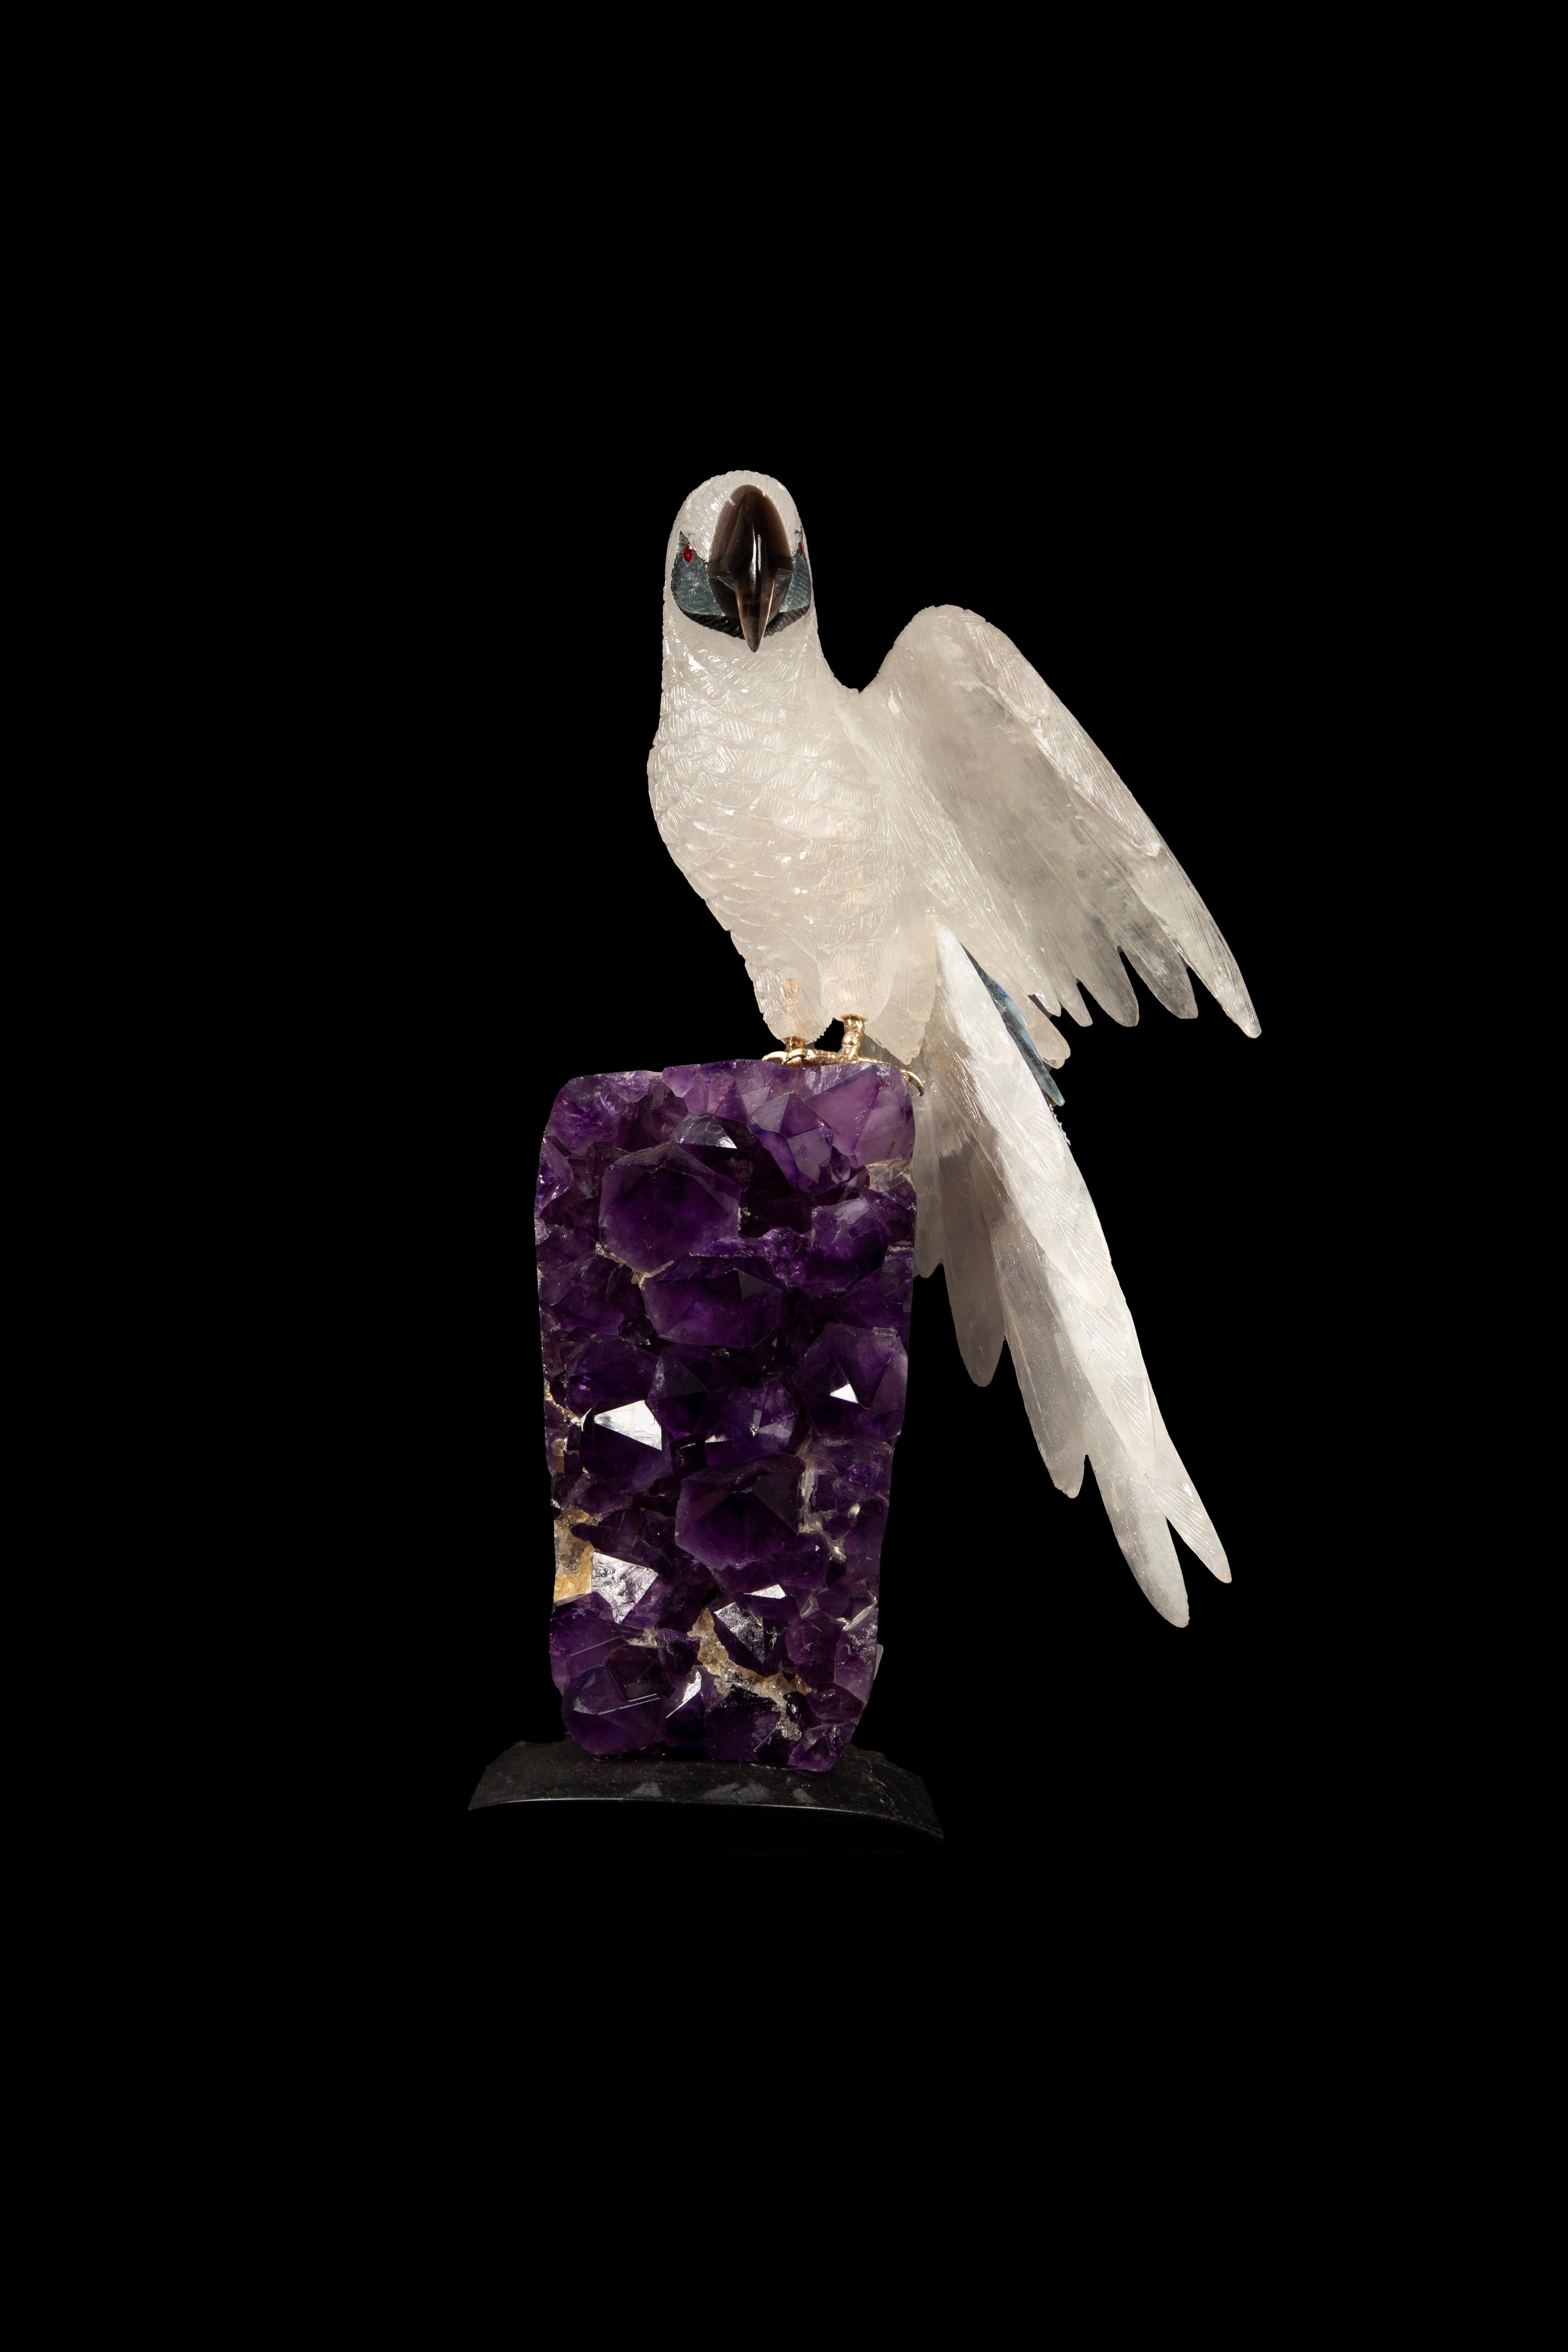 Dieser exquisite, 13 Zoll hohe Papagei in Bergkristall, der in Argentinien in sorgfältiger Handarbeit hergestellt wird, ist ein beeindruckendes Beispiel für handwerkliche Kunstfertigkeit. Die Skulptur, die auf einem leuchtenden Amethystcluster